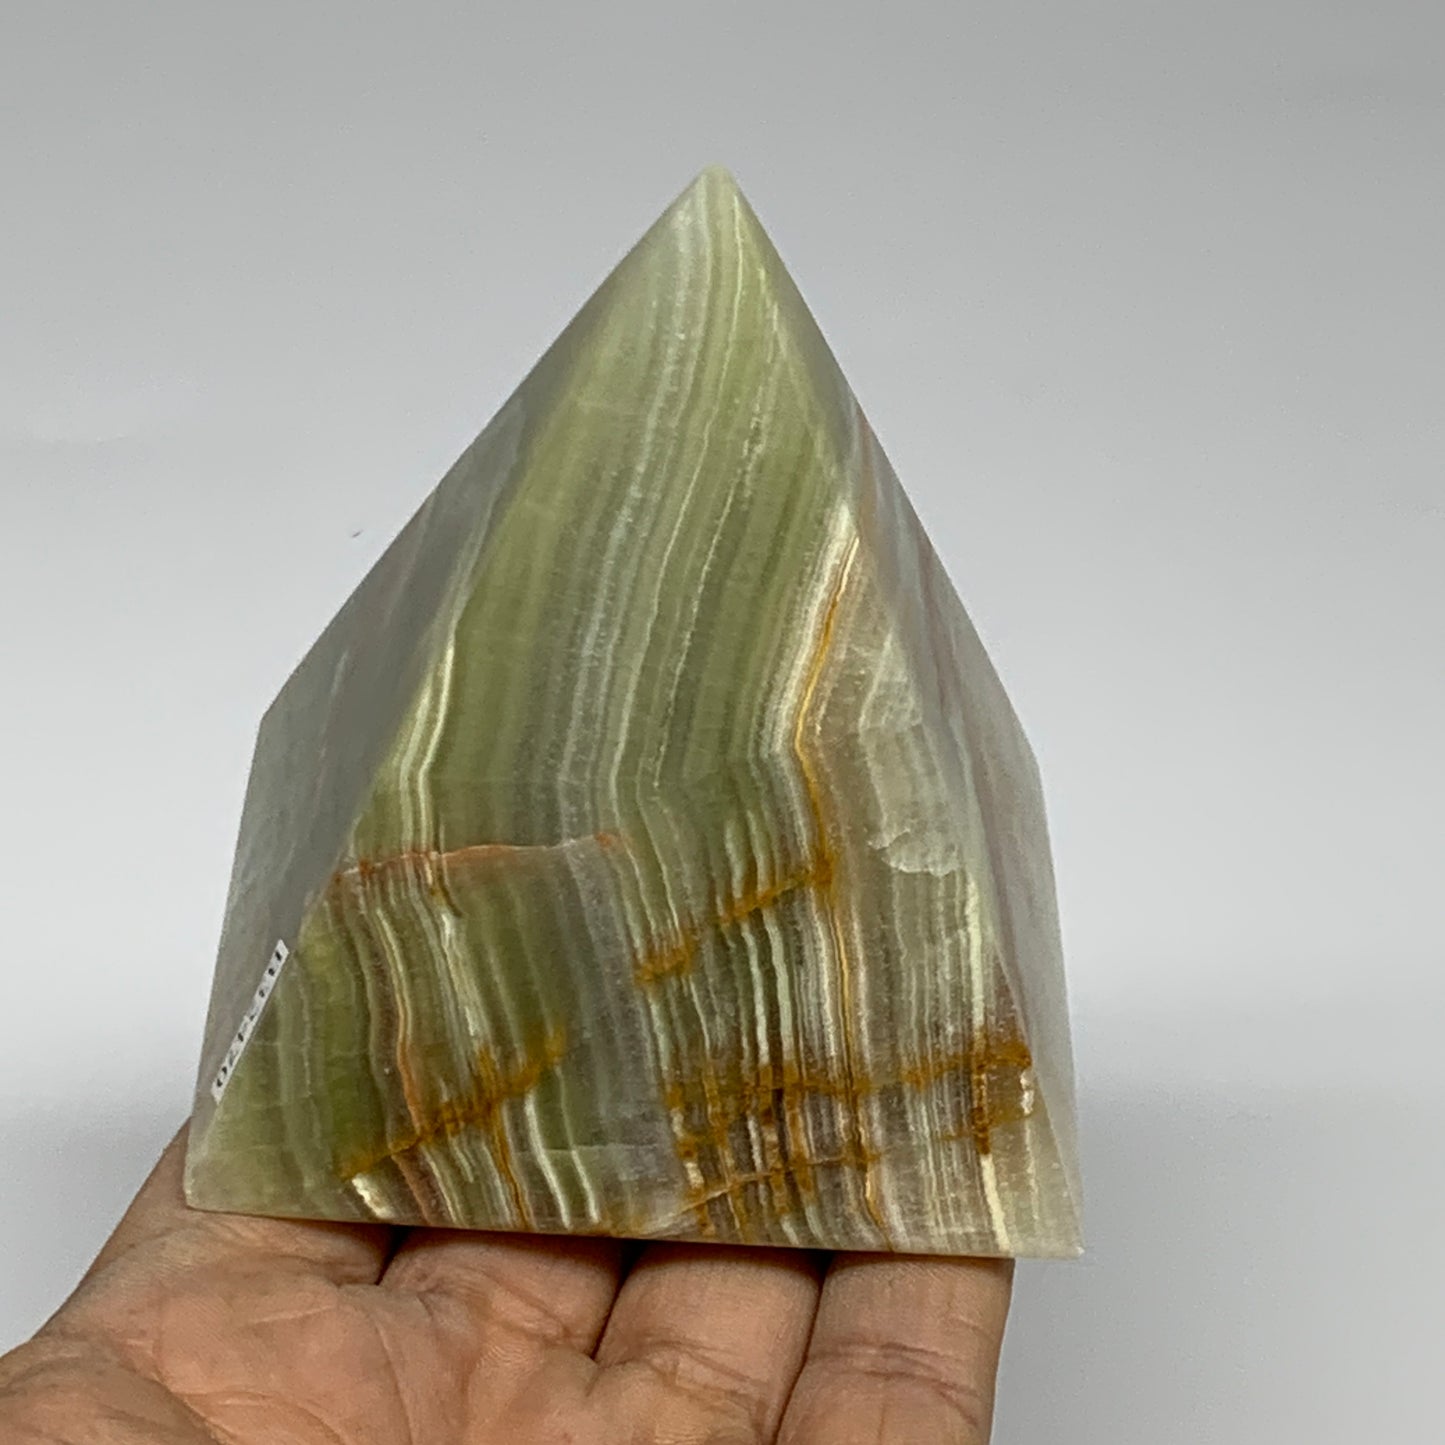 0.92 lbs, 3"x2.8"x2.9", Green Onyx Pyramid Gemstone Crystal, B32470